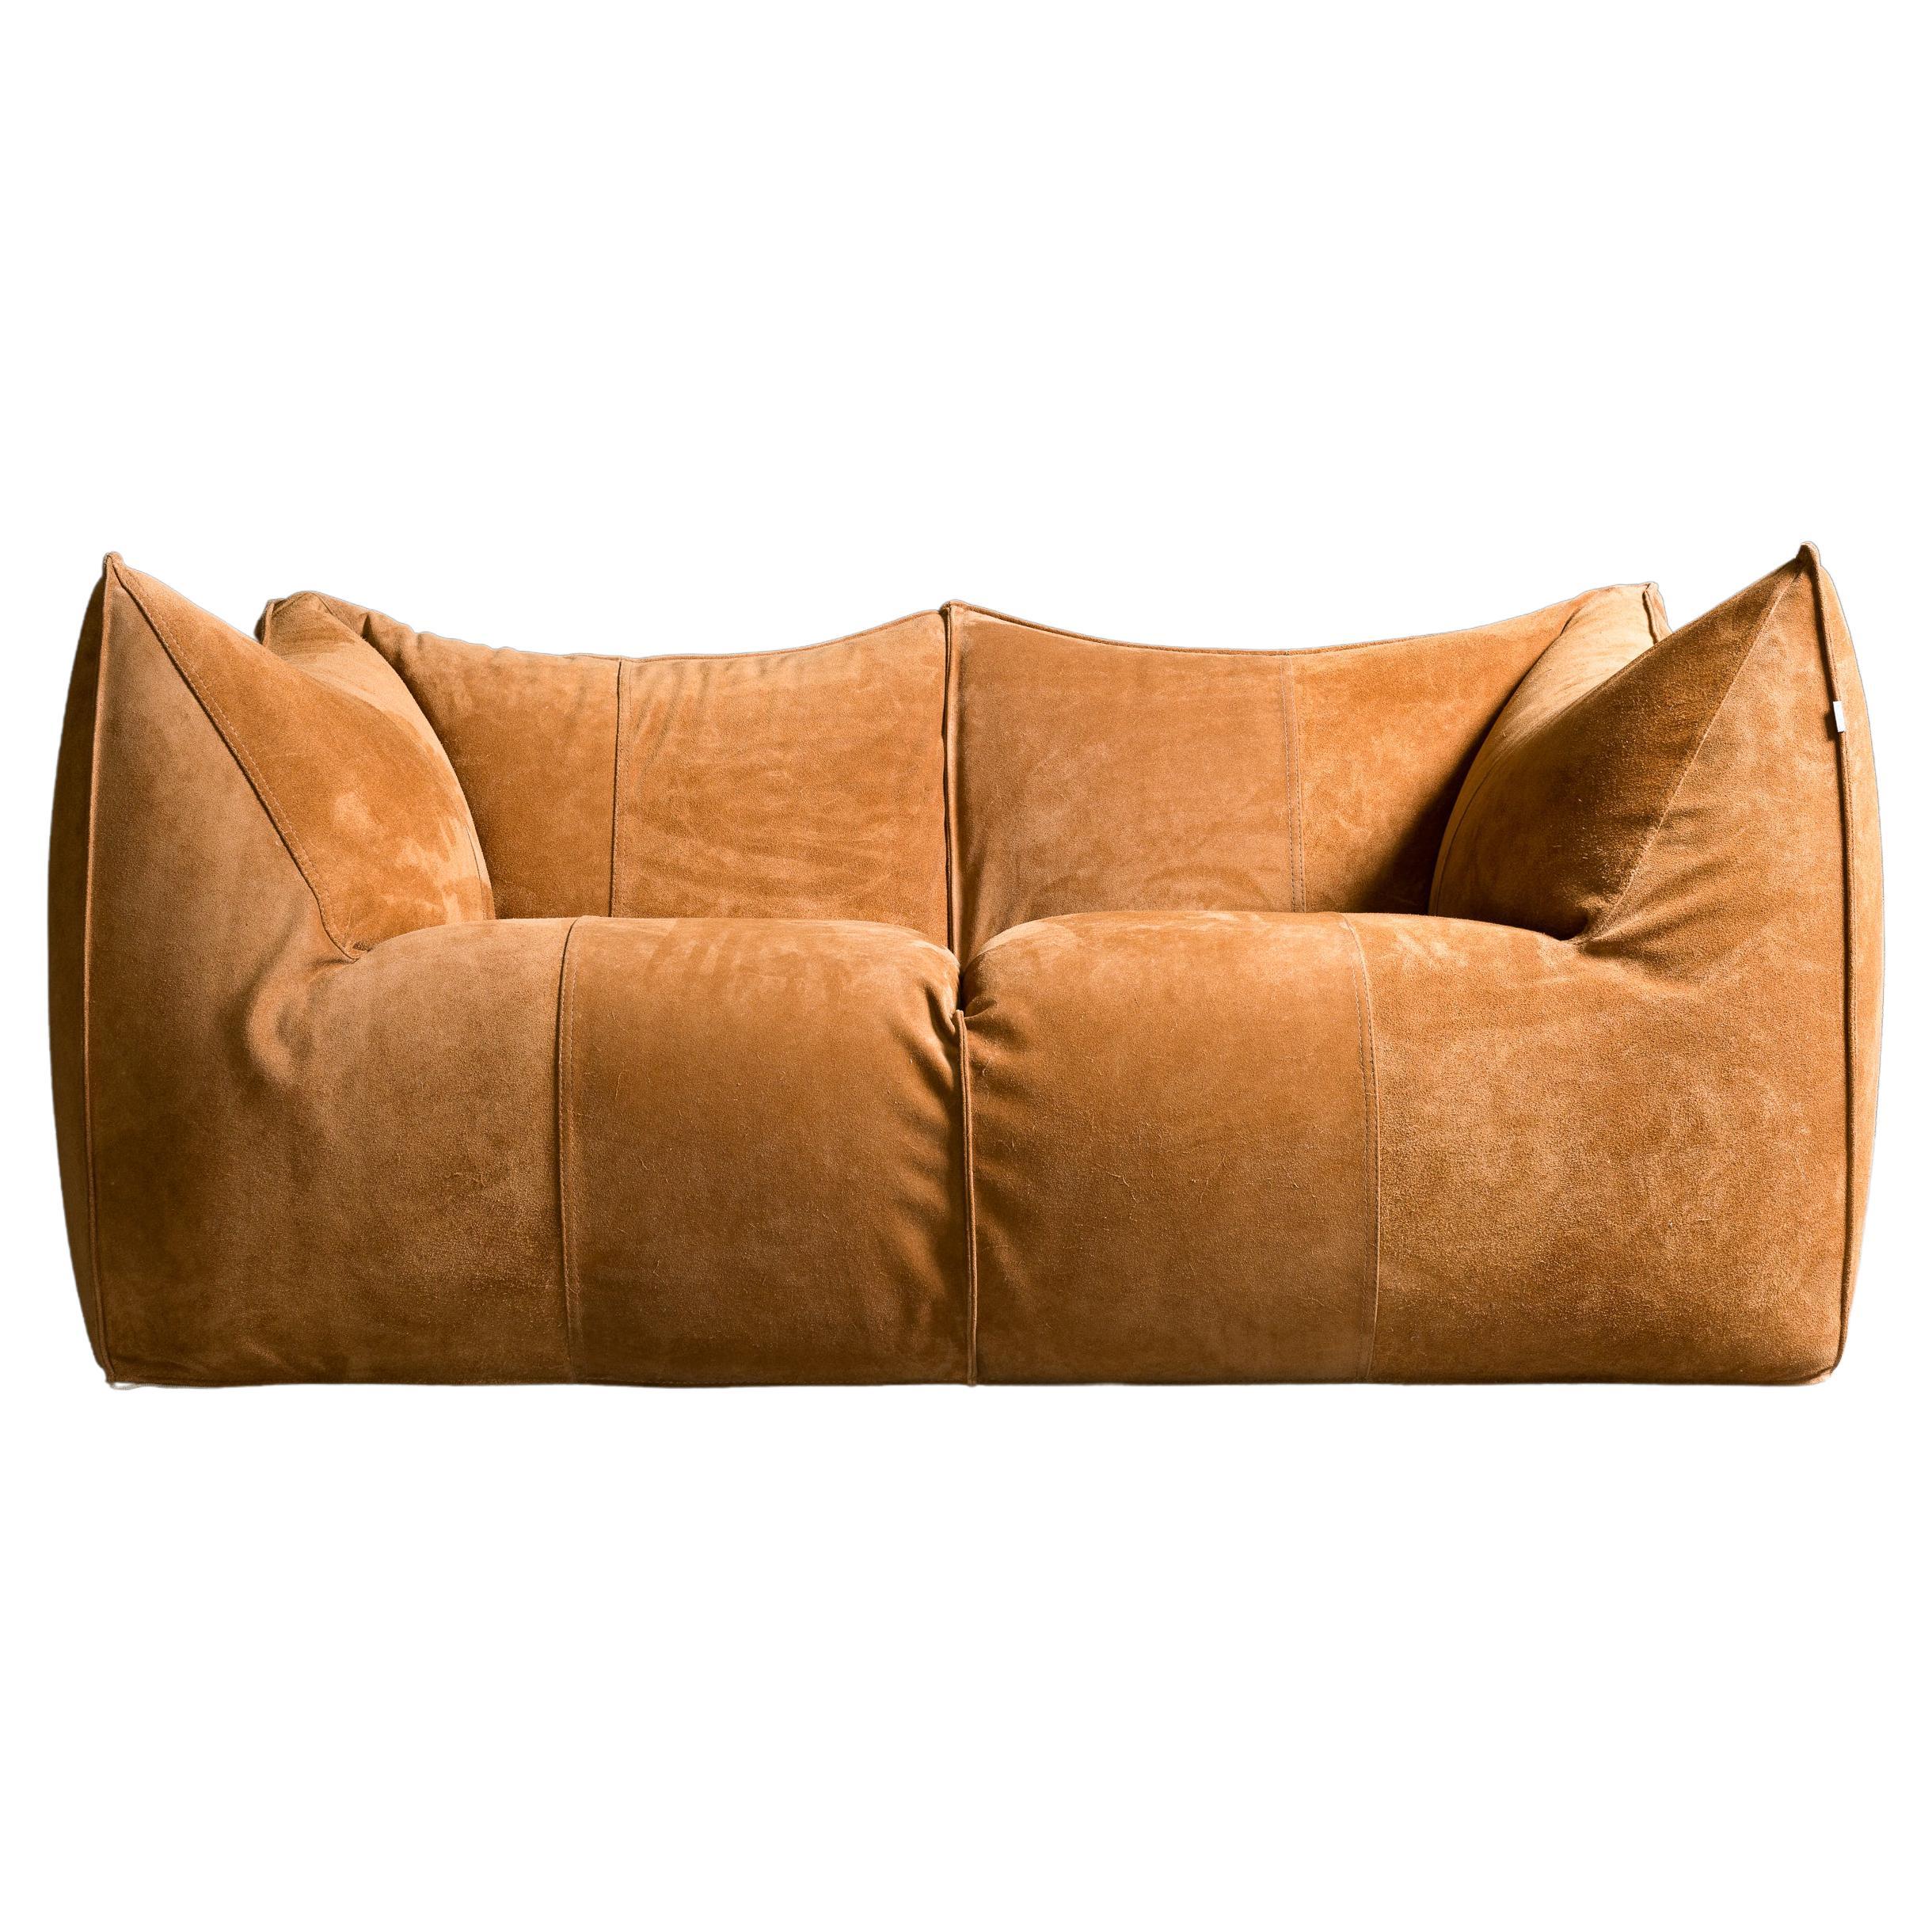 B&B Italia Le Bambole sofa in Suede Leather